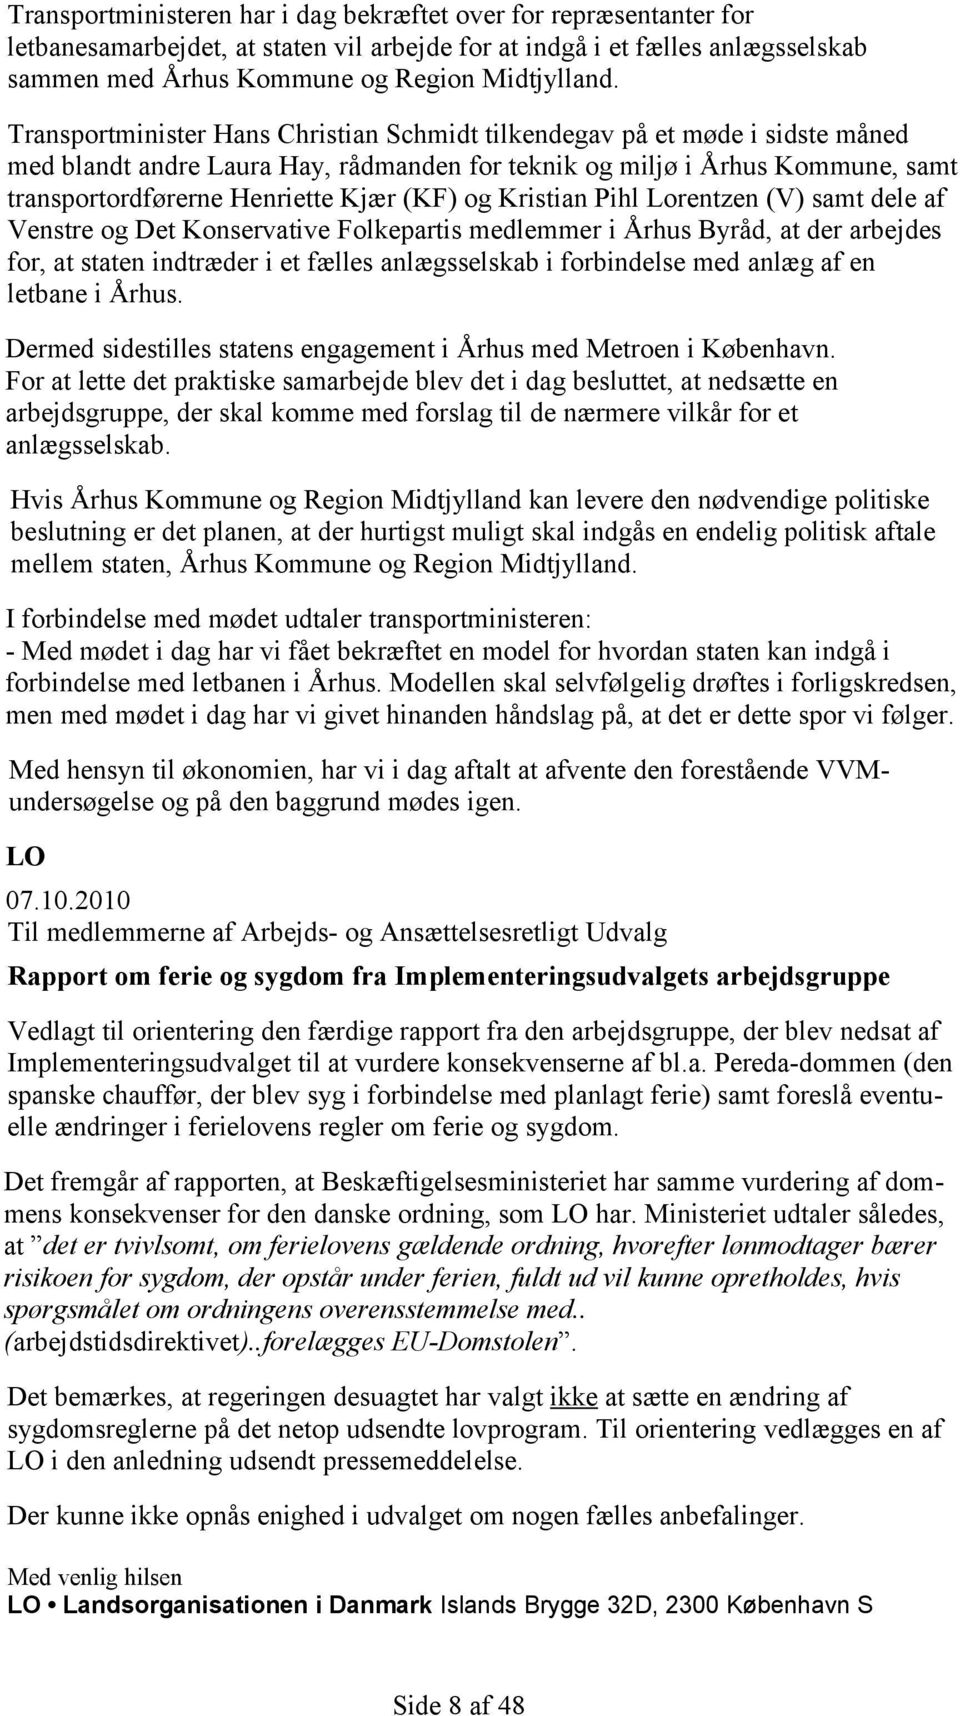 og Kristian Pihl Lorentzen (V) samt dele af Venstre og Det Konservative Folkepartis medlemmer i Århus Byråd, at der arbejdes for, at staten indtræder i et fælles anlægsselskab i forbindelse med anlæg